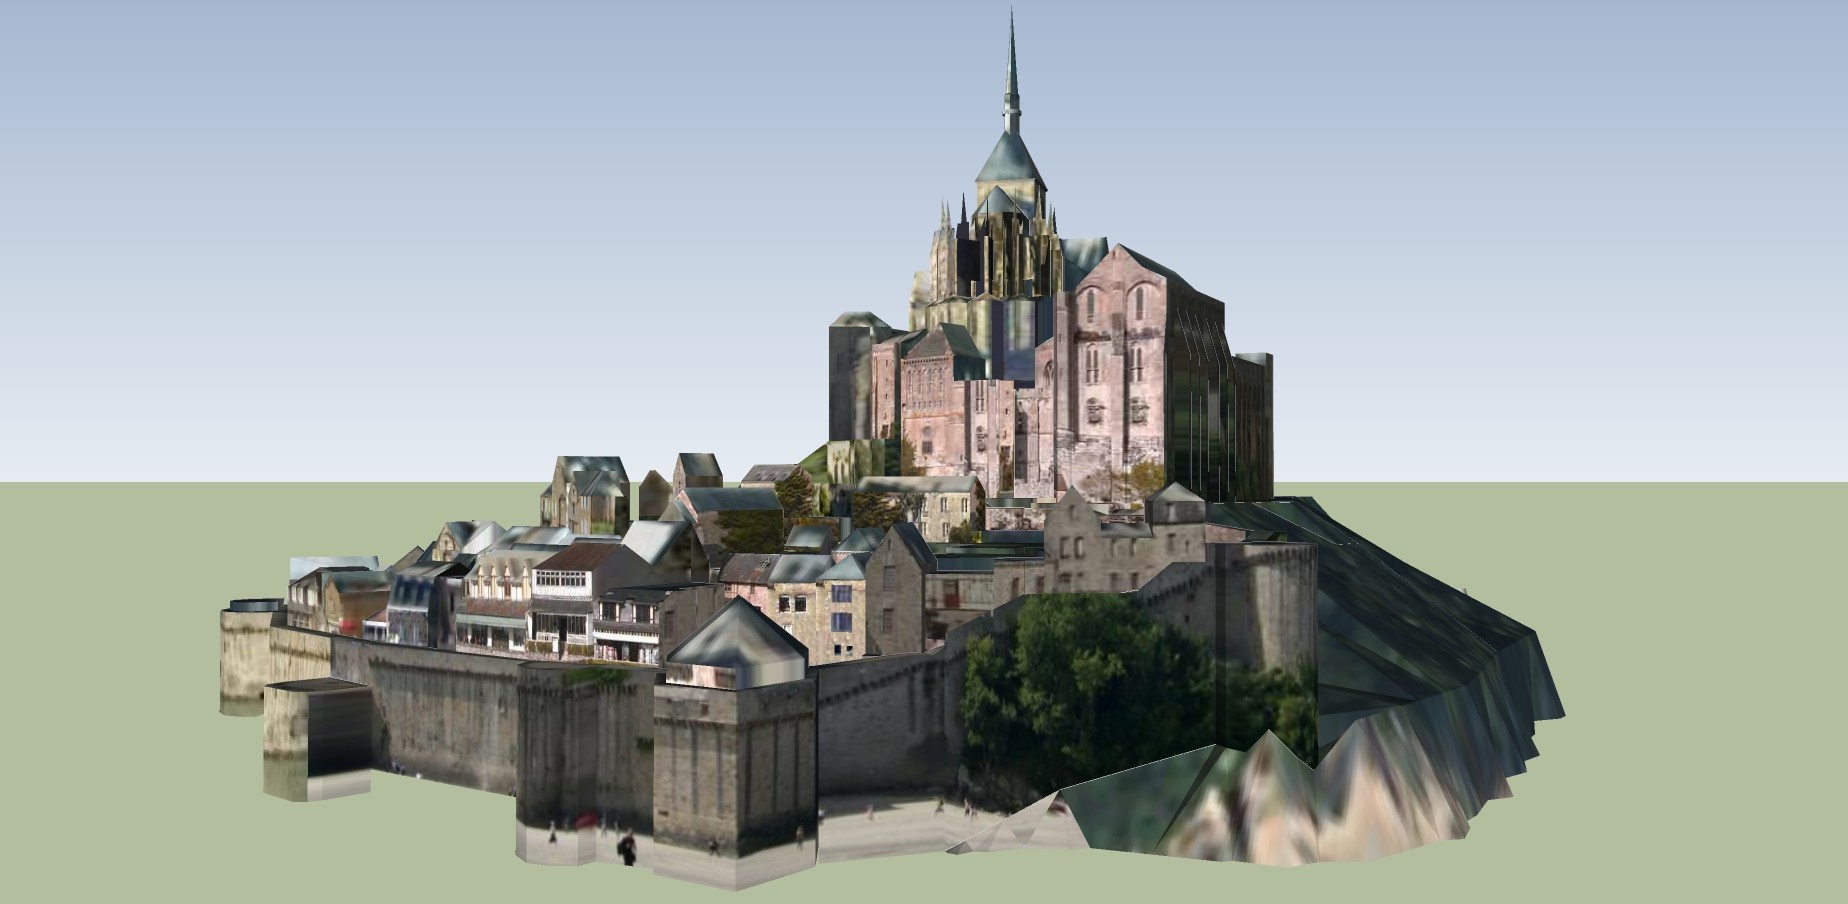 117欧式建筑城堡  庄园  迪士尼乐园 儿童乐园 游乐园 欧式古典建筑城堡  欧式影视基地su草图模型下载